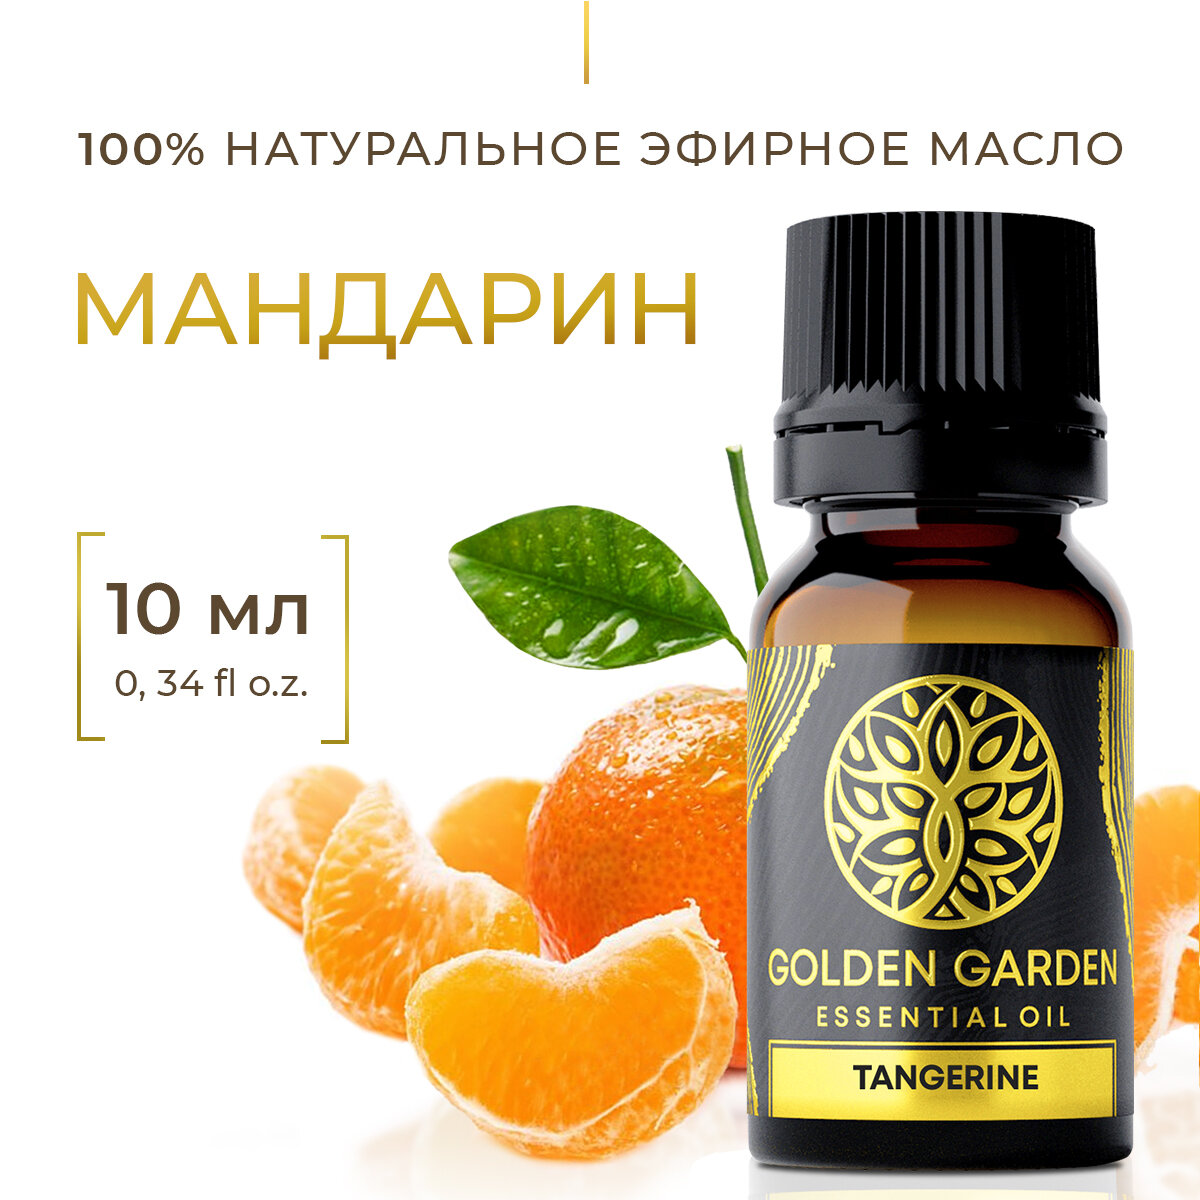 Натуральное Эфирное масло мандарин 10мл Golden Garden для ароматерапии, диффузора, бани и сауны